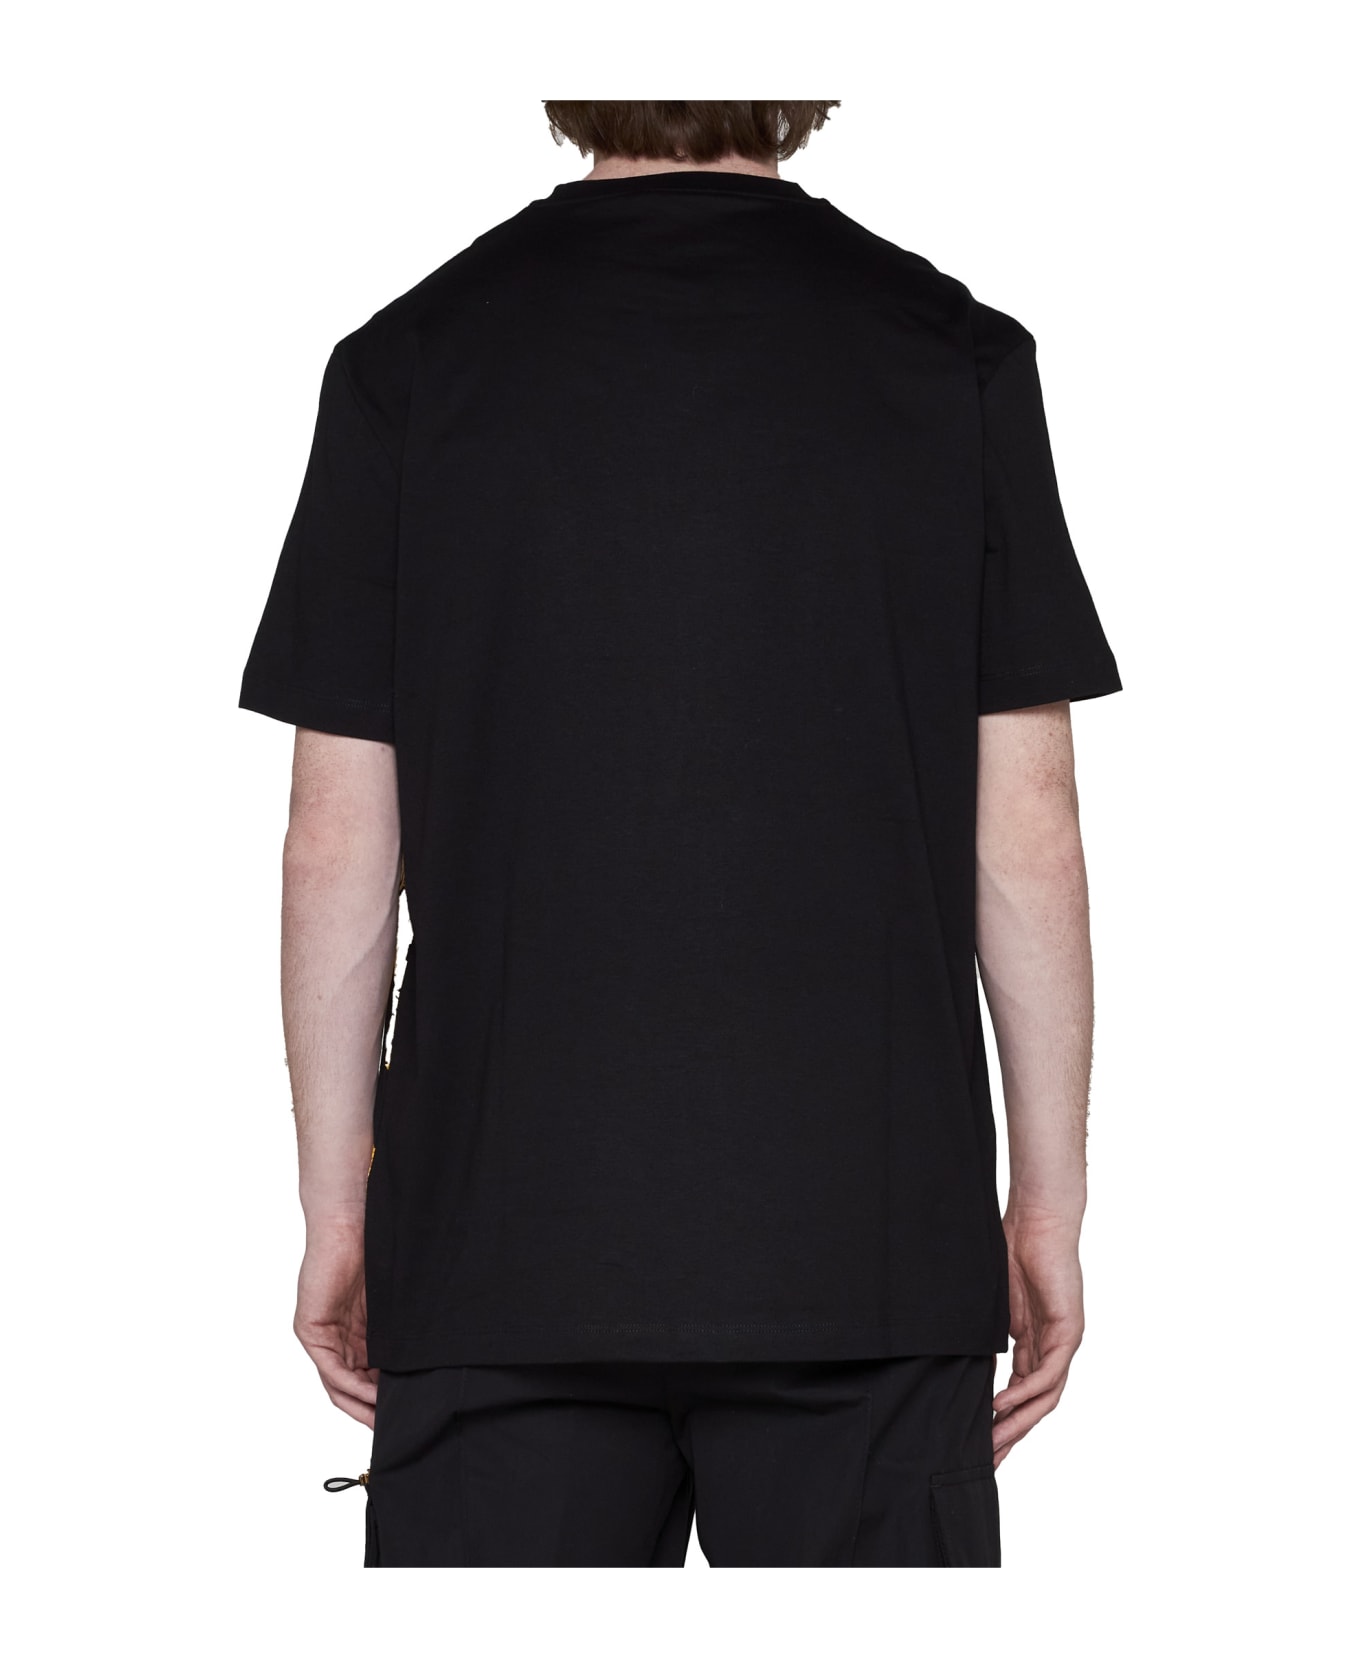 Versace Printed Cotton T-shirt - Nero/oro